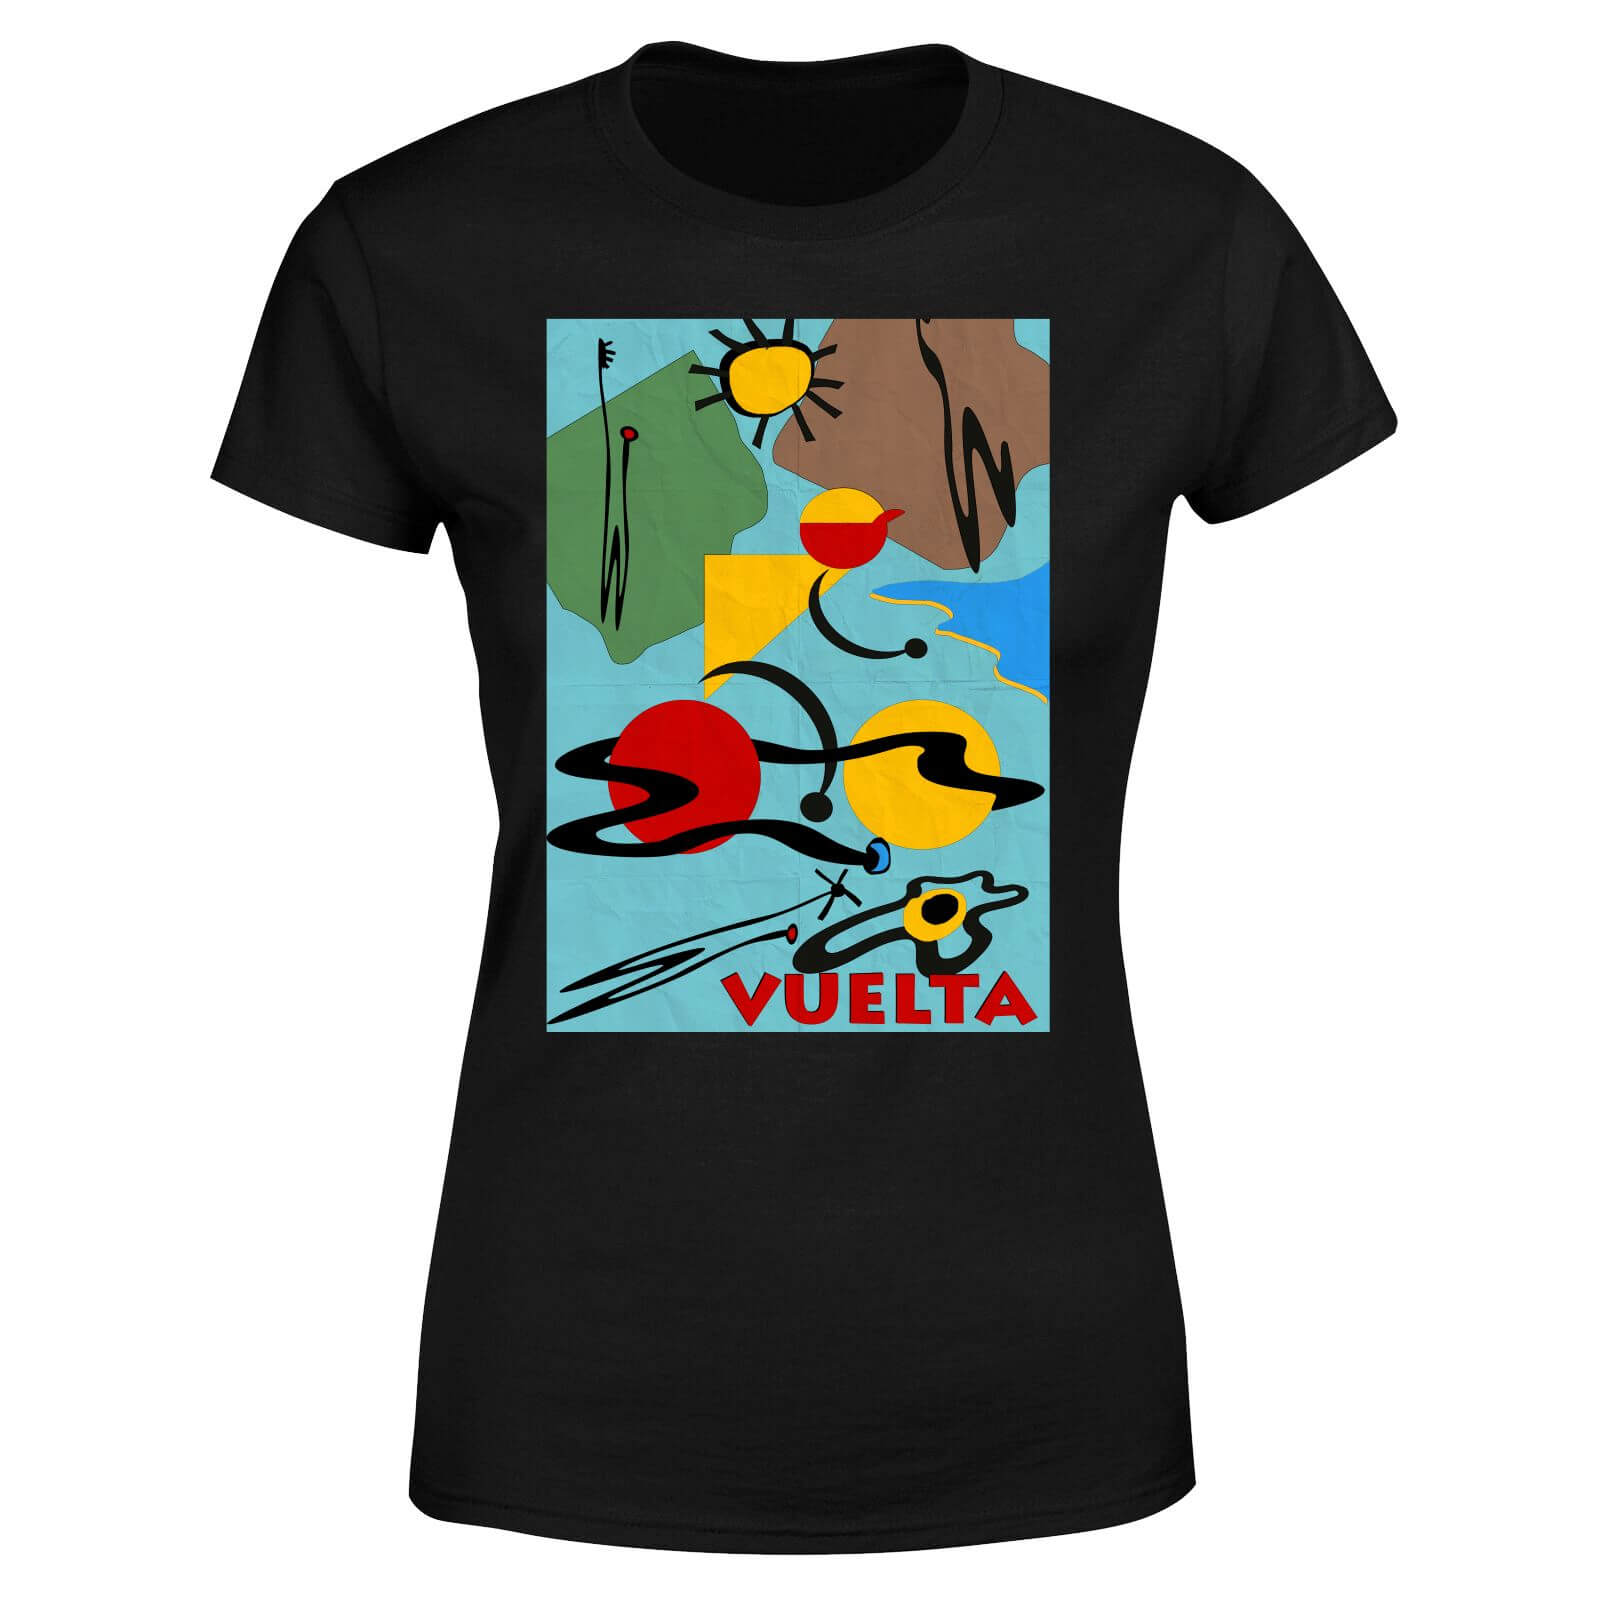 Vuelta Miro Women's T-Shirt - Black - XXL